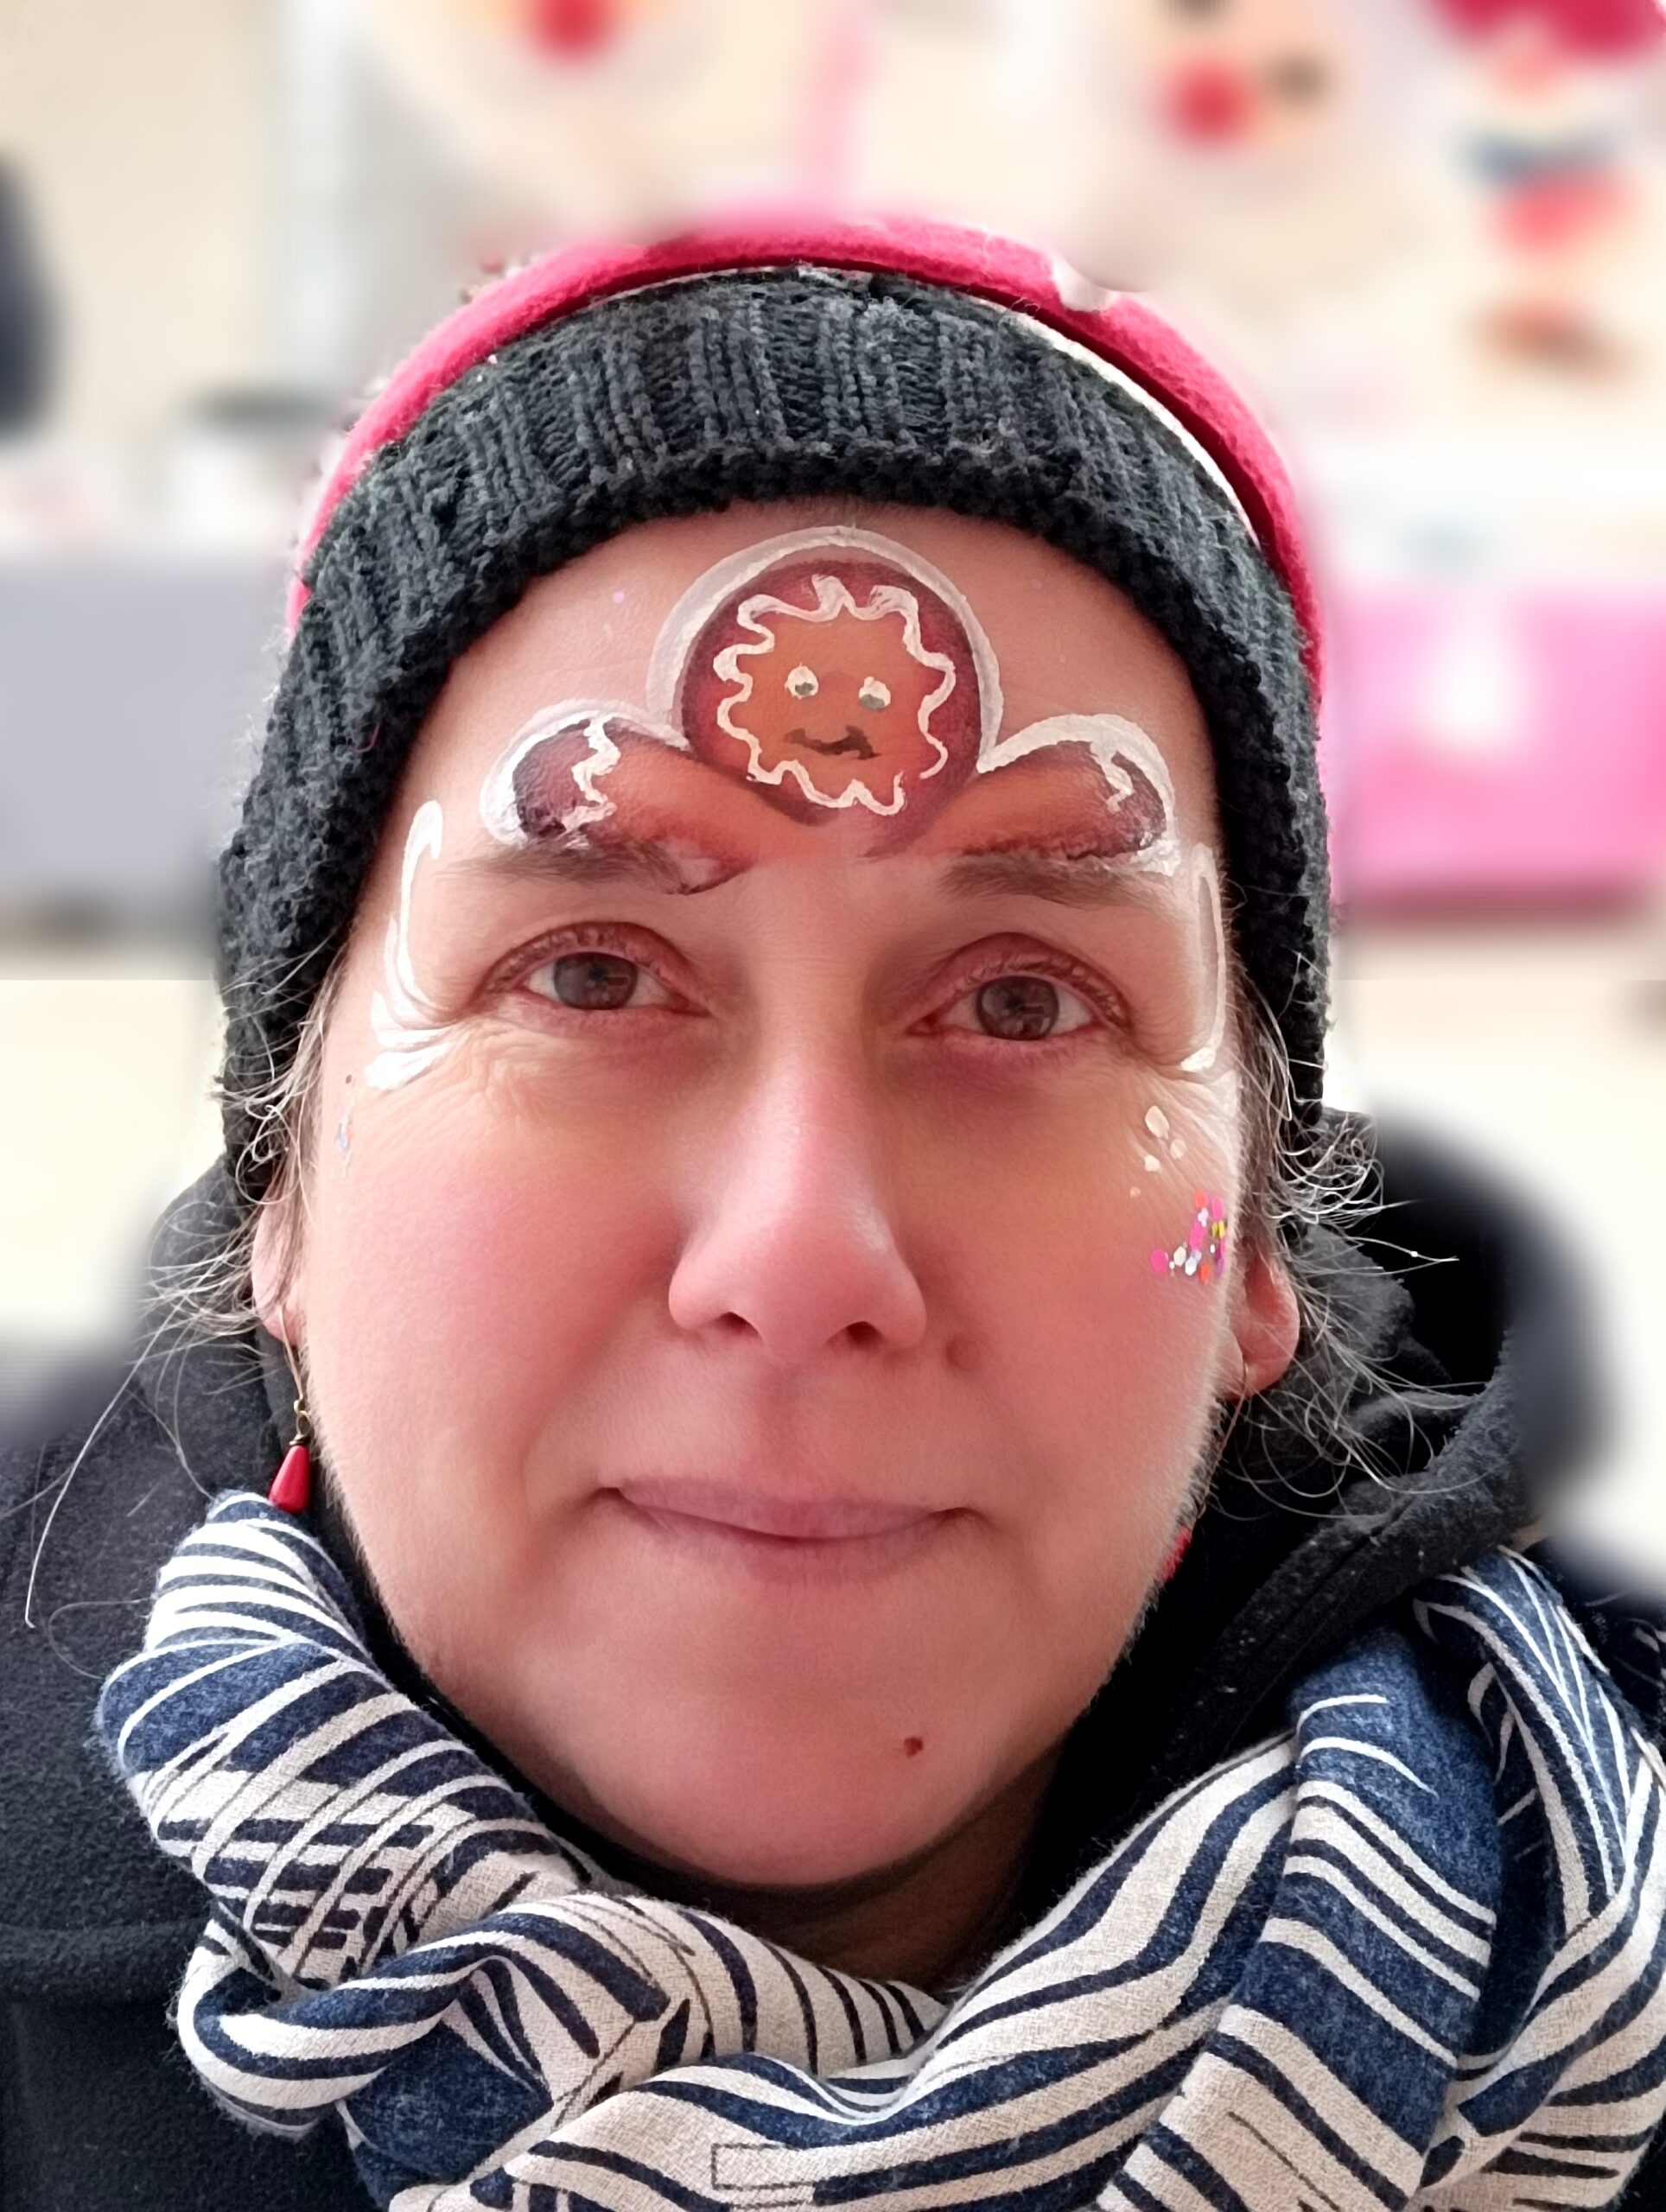 Maquillage Enfant Lyon Face Paint Animation Kermesse et Arbre de Noël